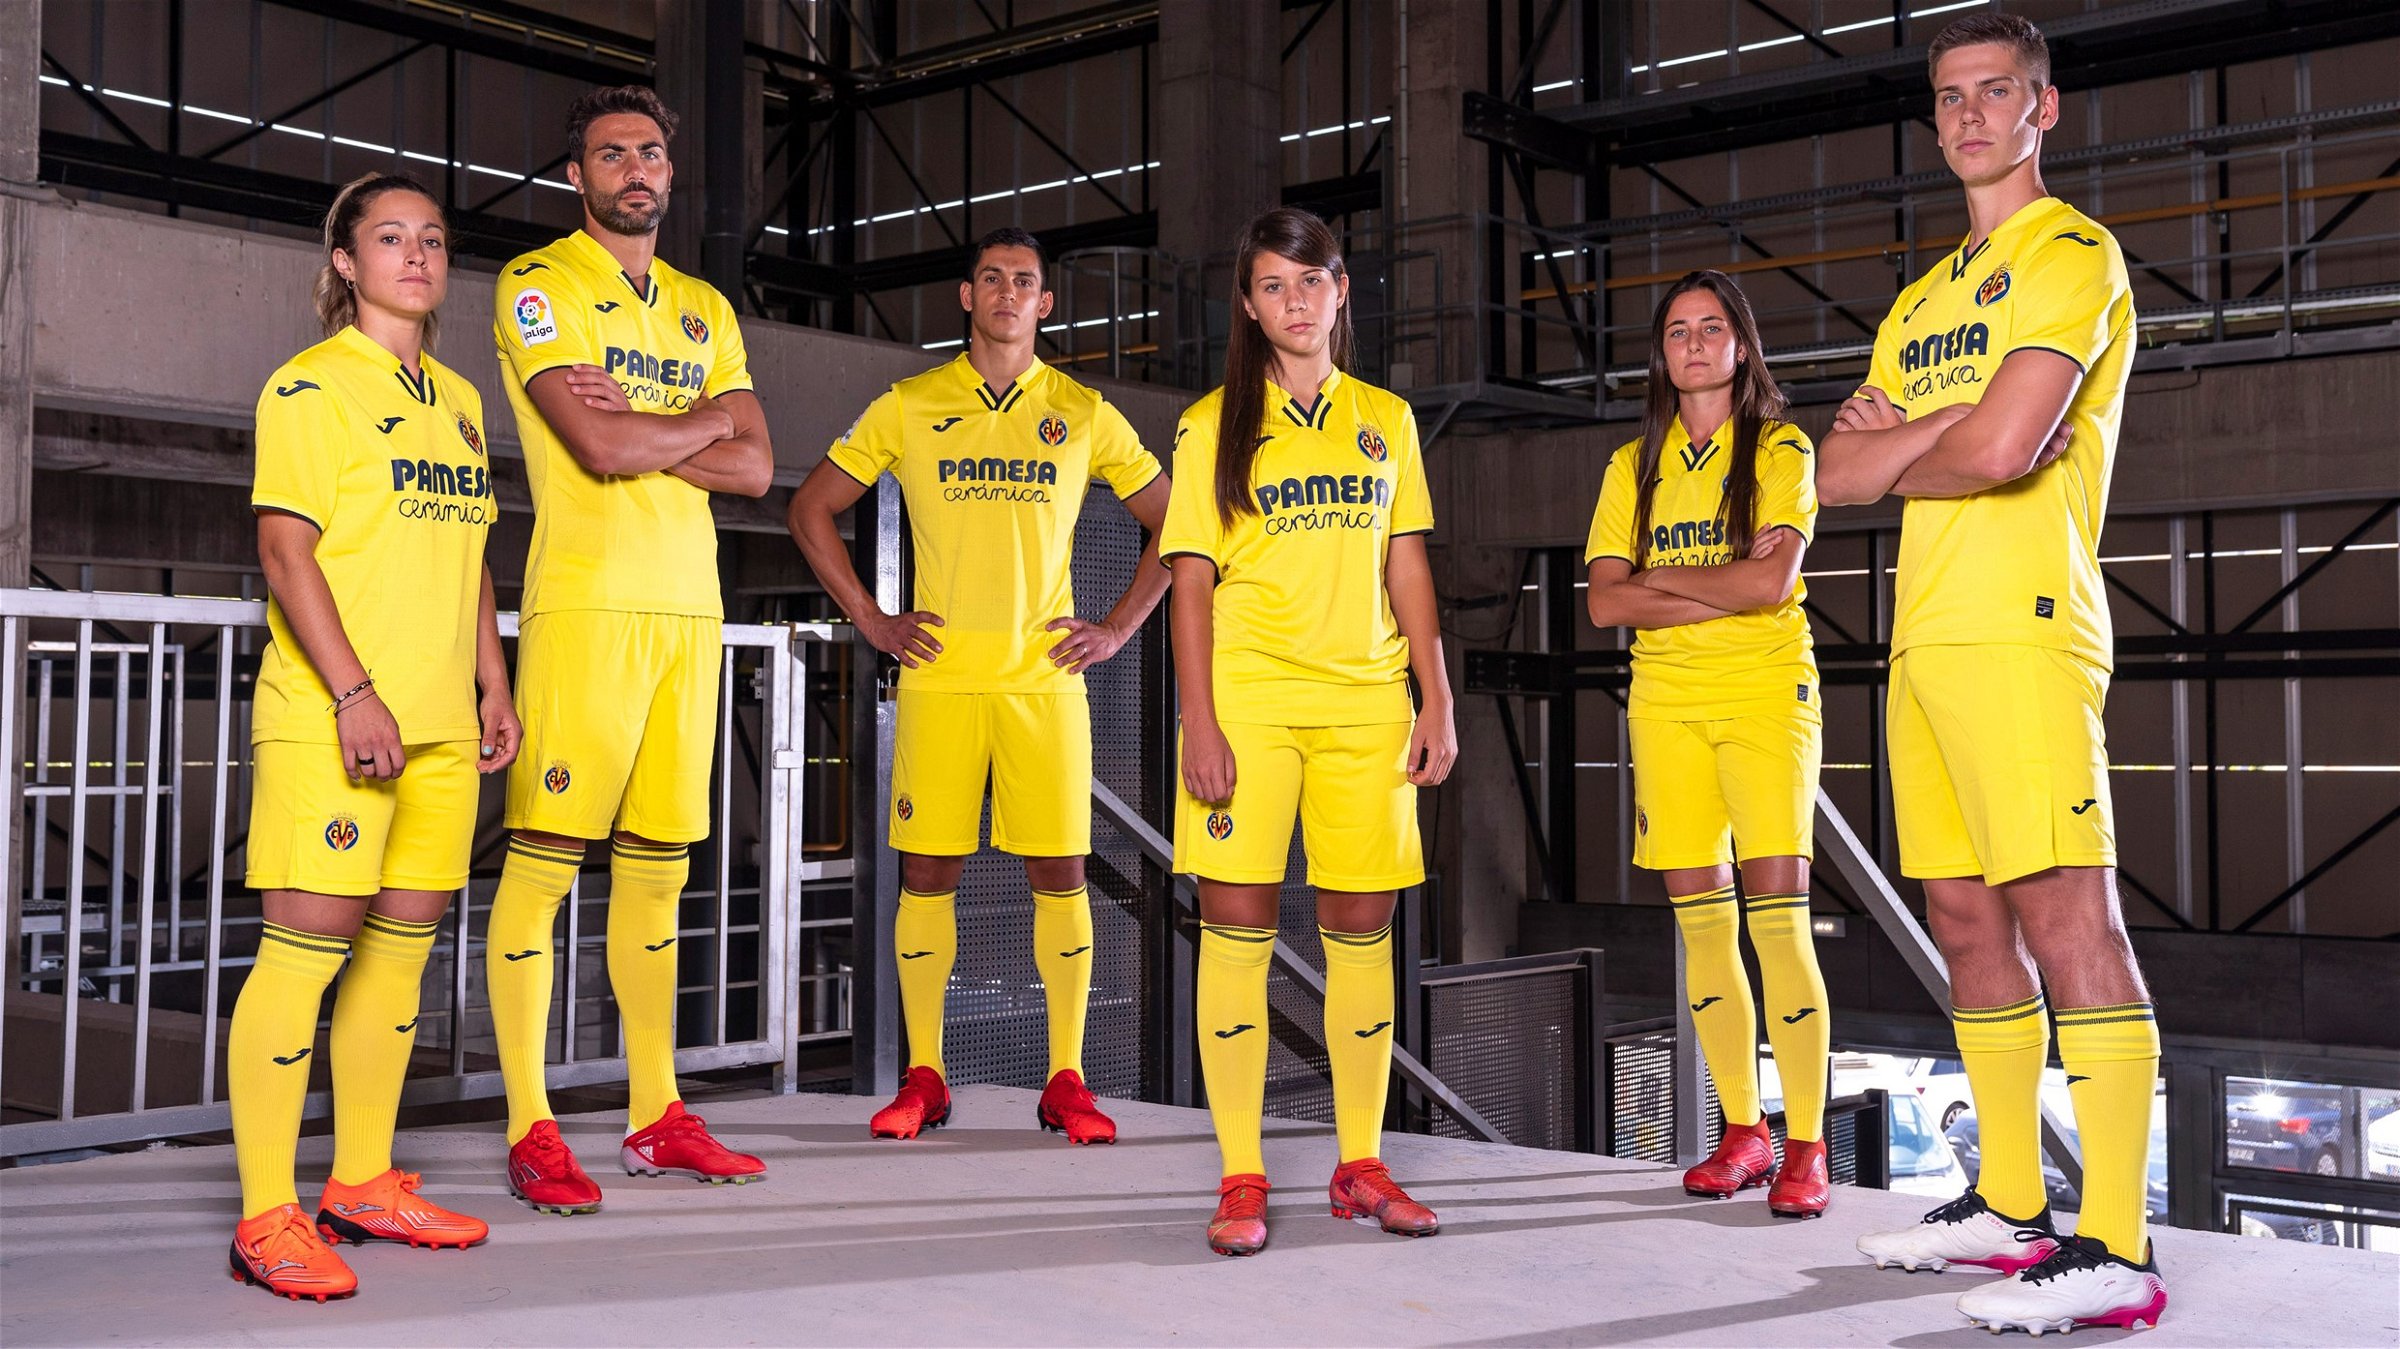 clérigo Bolsa Fuera de Vívela! The new Villarreal 2021/22 kits - Web Oficial del Villarreal CF